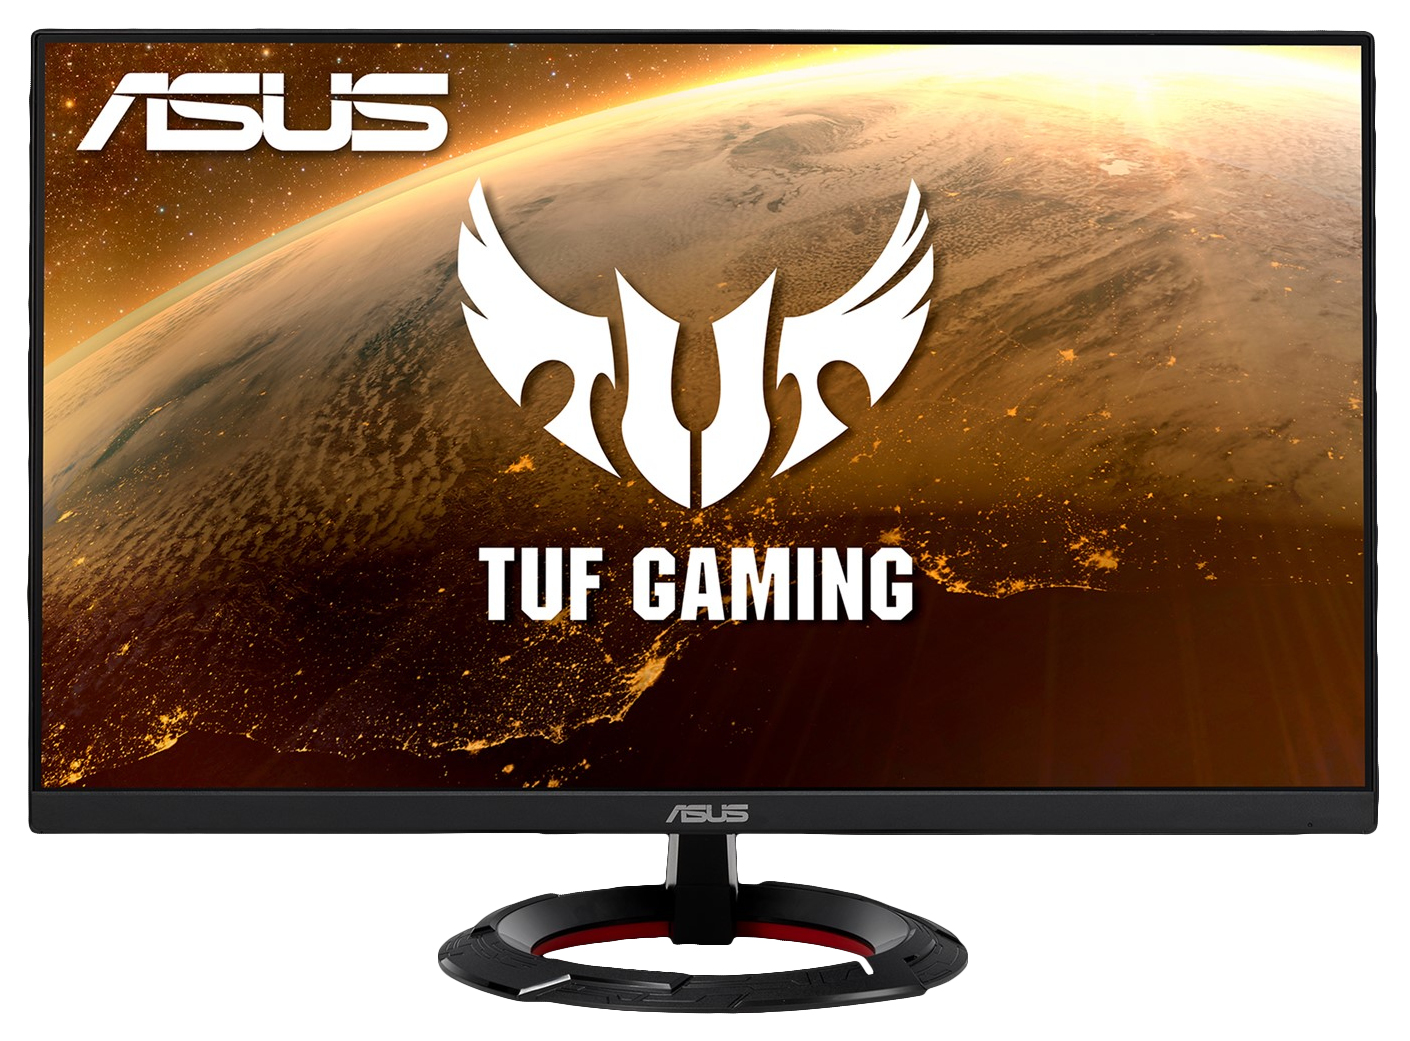 ASUS TUF Gaming VG249Q1R computer monitor